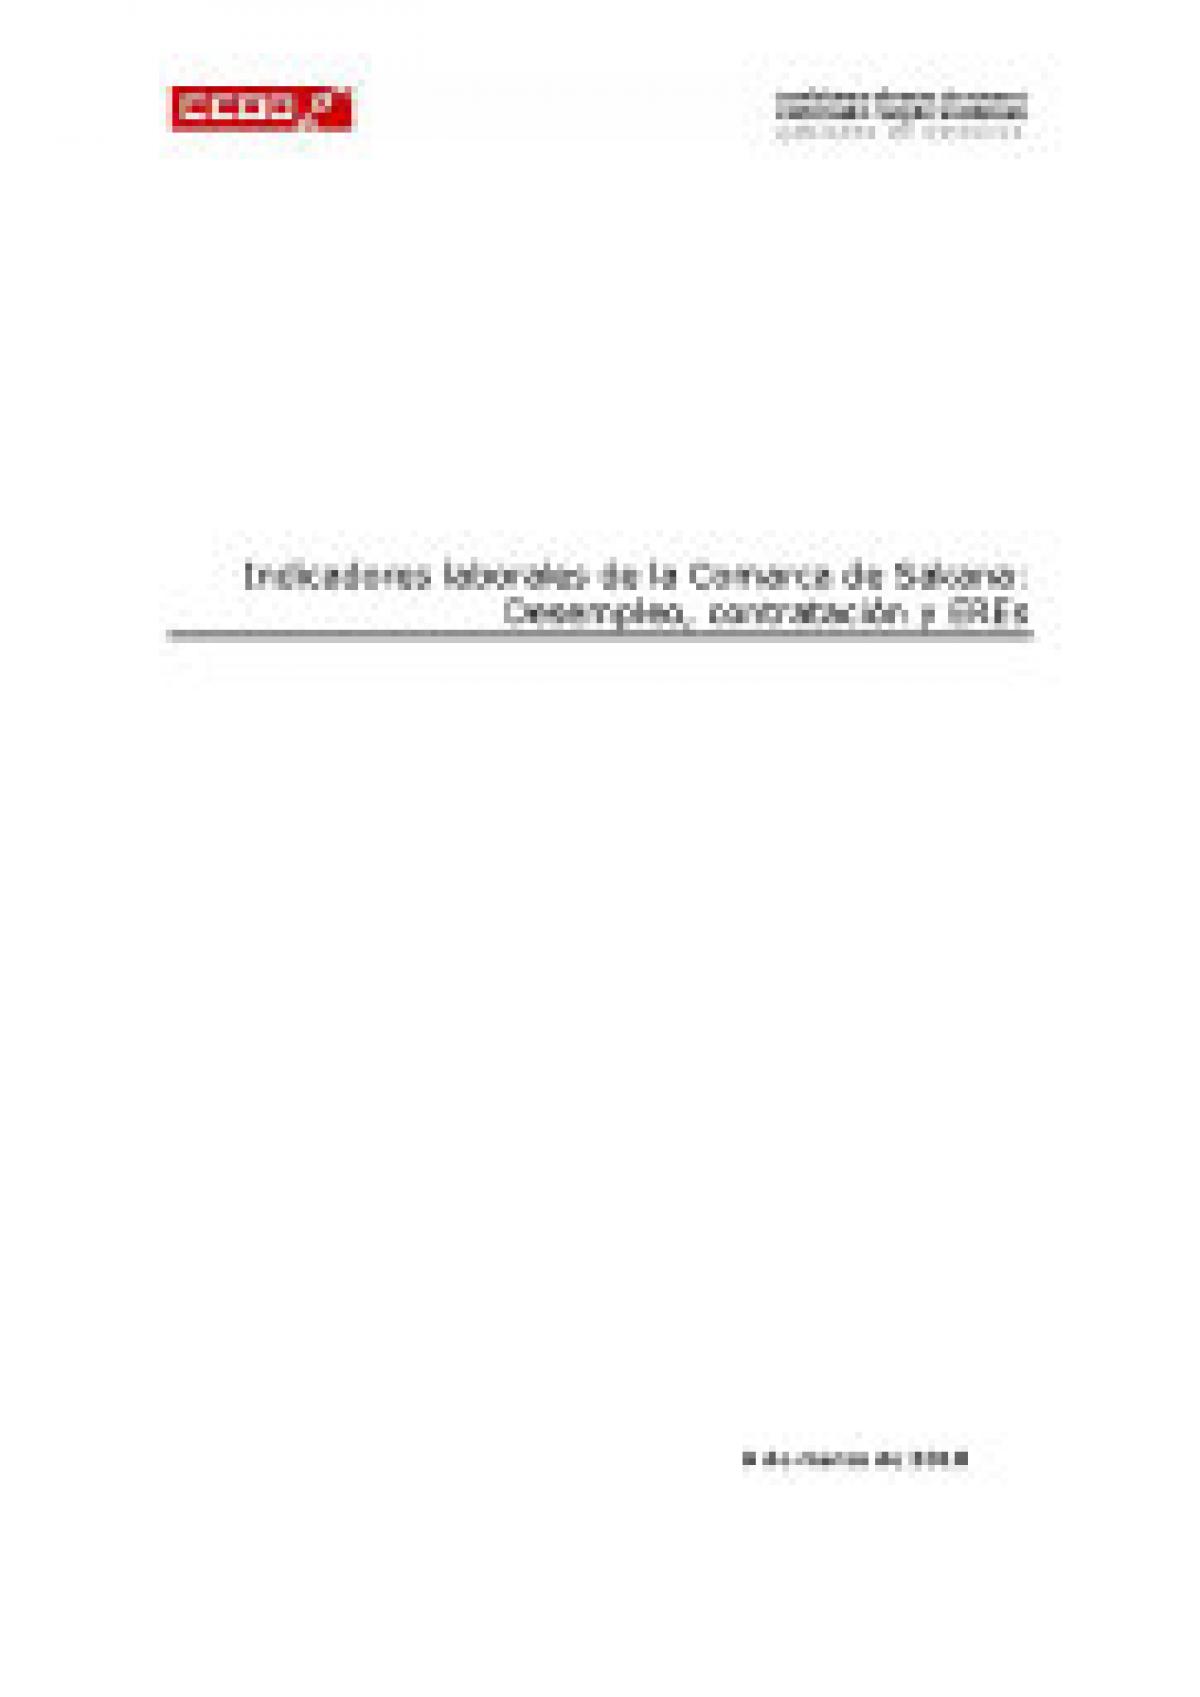 Indicadores laborales de la Comarca de Sakana: Desempleo, Contratación y EREs. Marzo 2010.